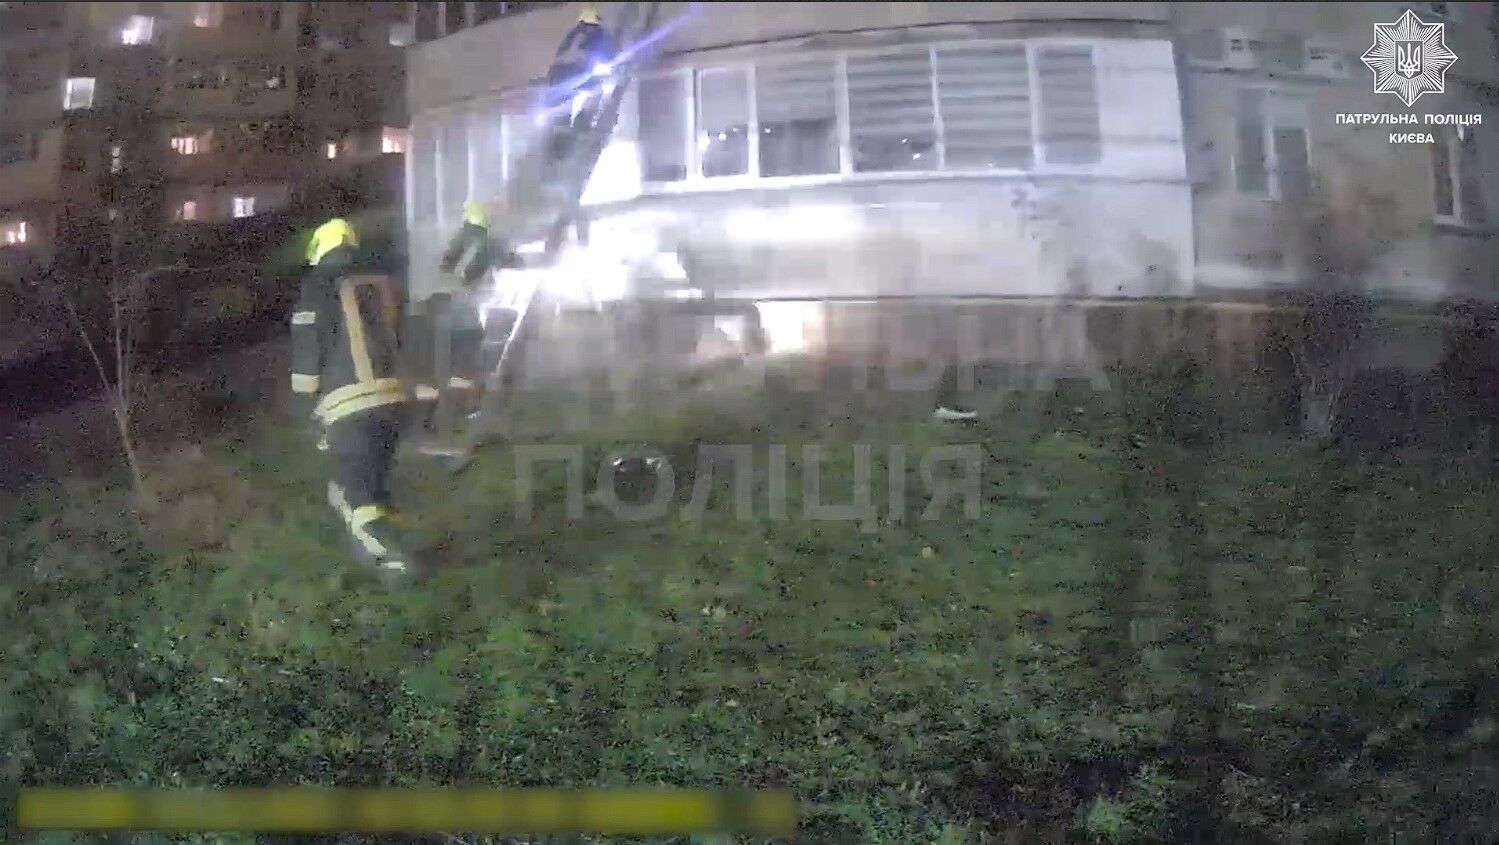 В Киеве патрульные и спасатели на руках вынесли потерявшего сознание мужчину из квартиры, где произошел пожар. Видео